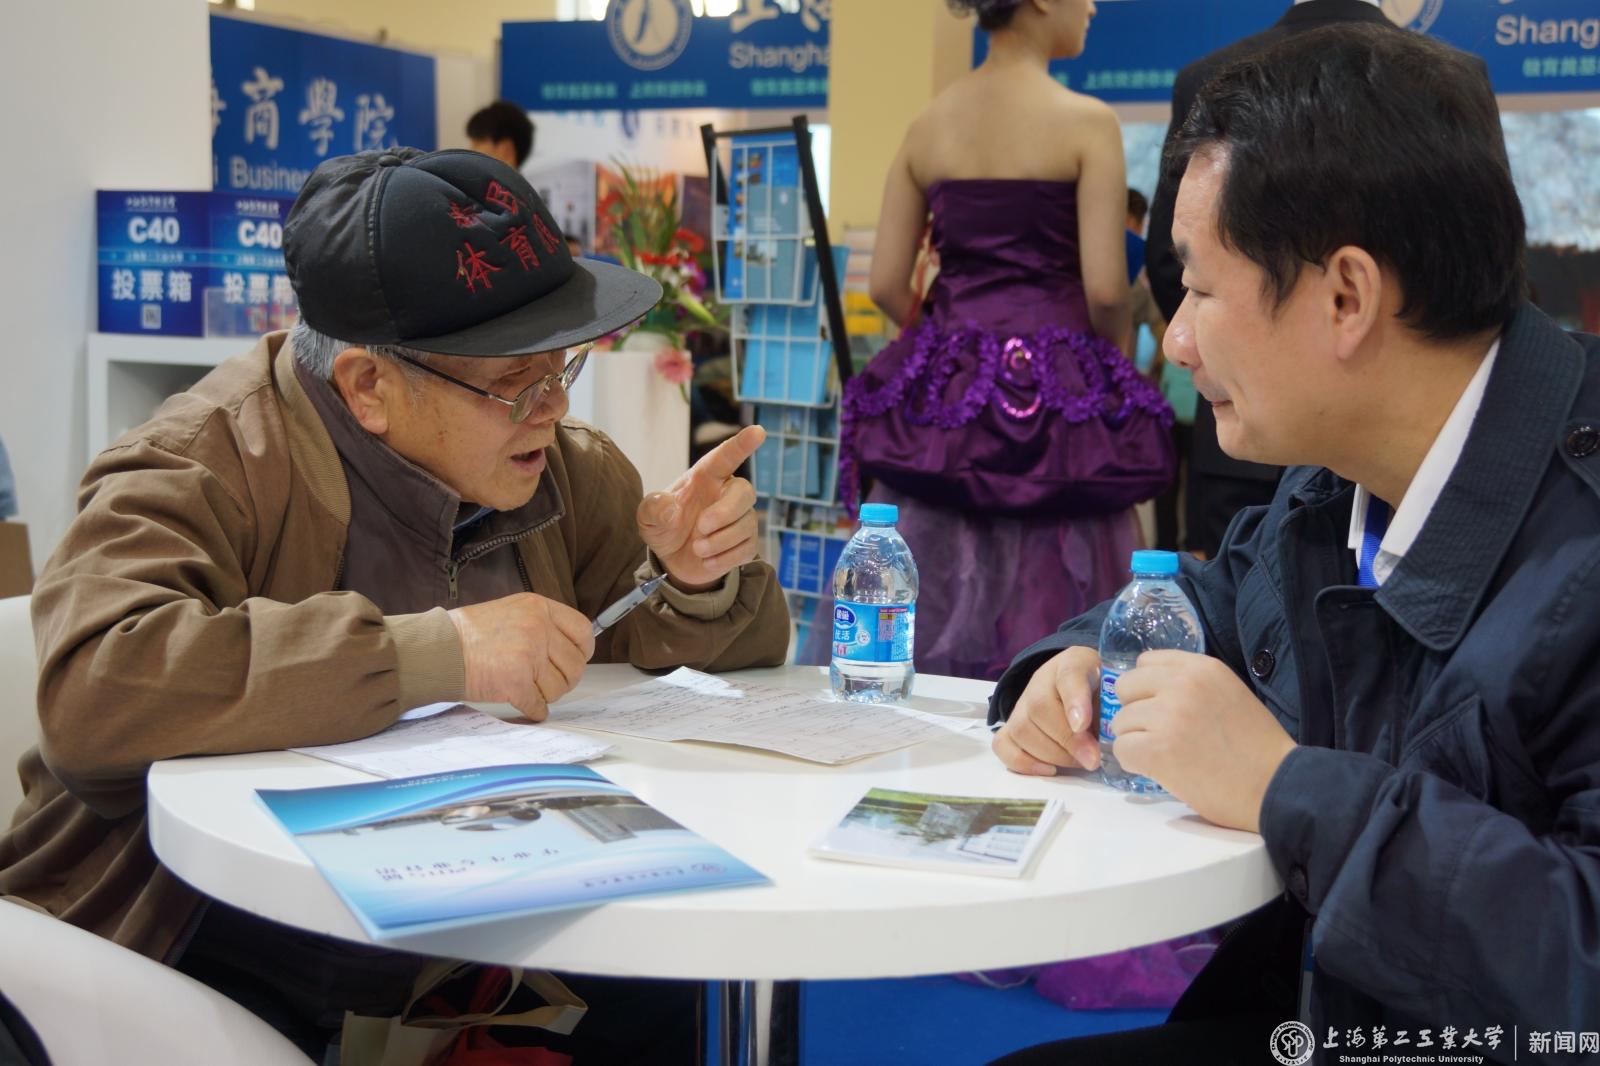 招生就业指导中心主任经晓峰为老先生咨询解答招生问题。